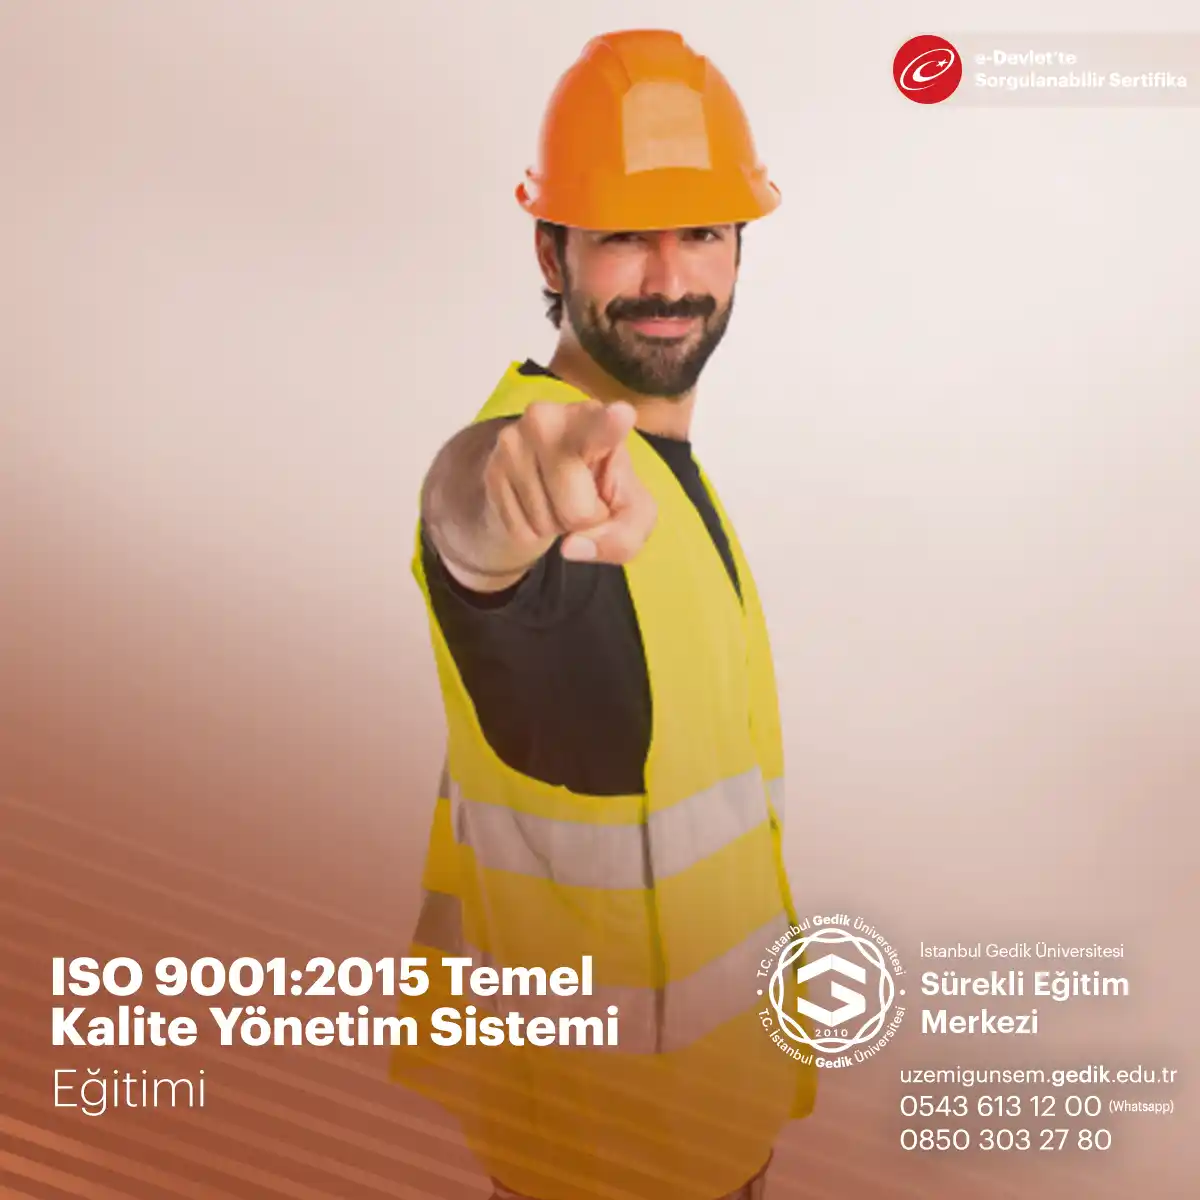 ISO 9001:2015 Temel Kalite Yönetimi Sertifikalı Eğitim Programı